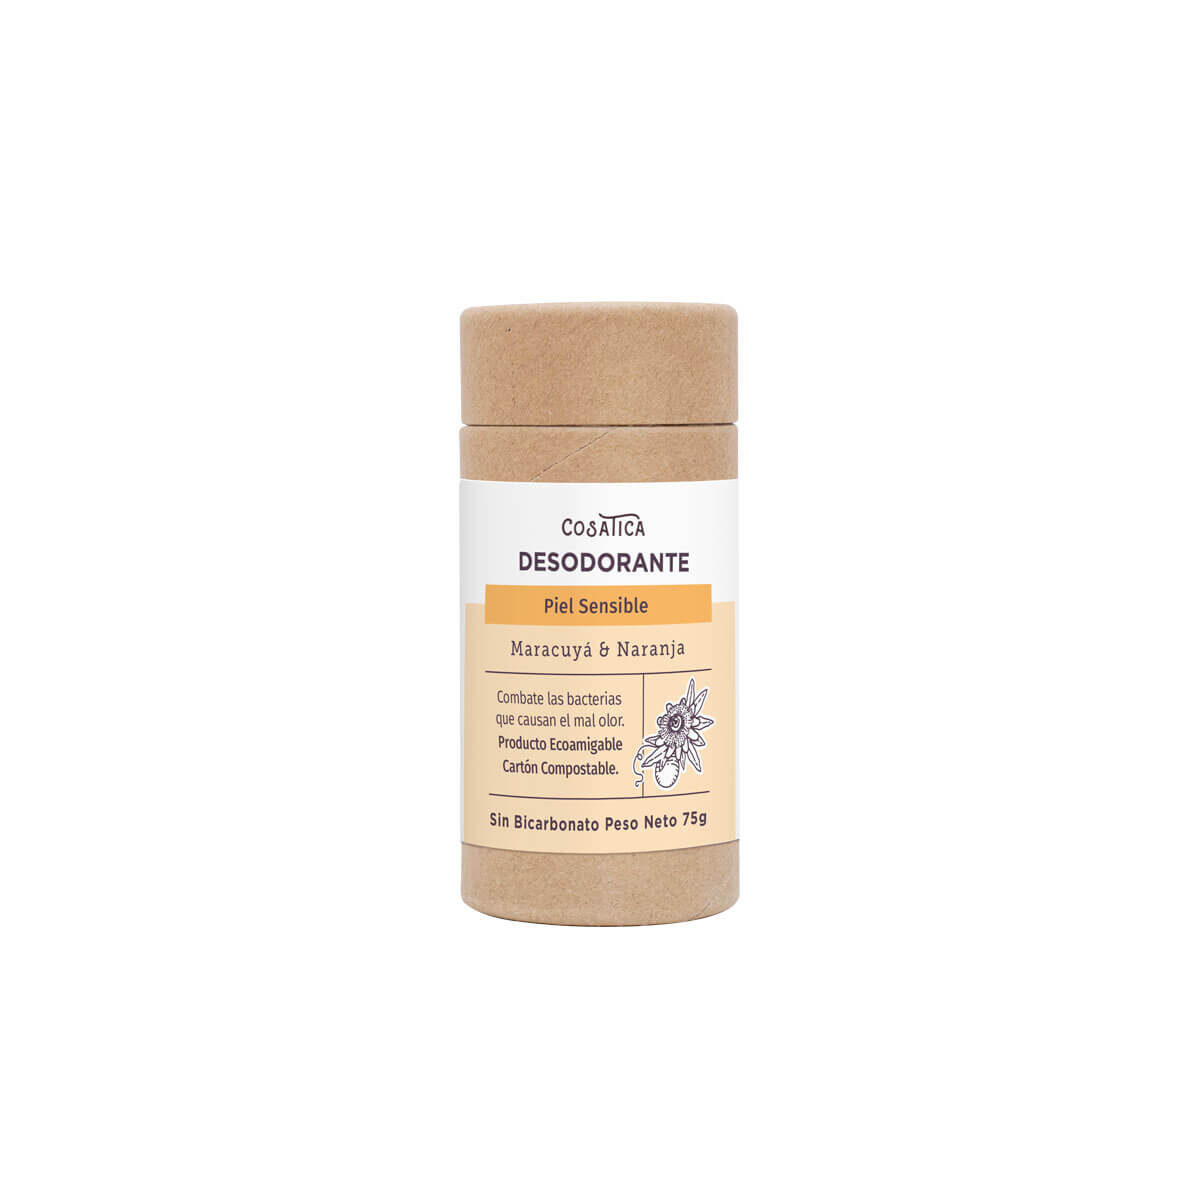 Desodorante para piel sensible aroma a maracuyá y naranja. Sin Bicarbonato.